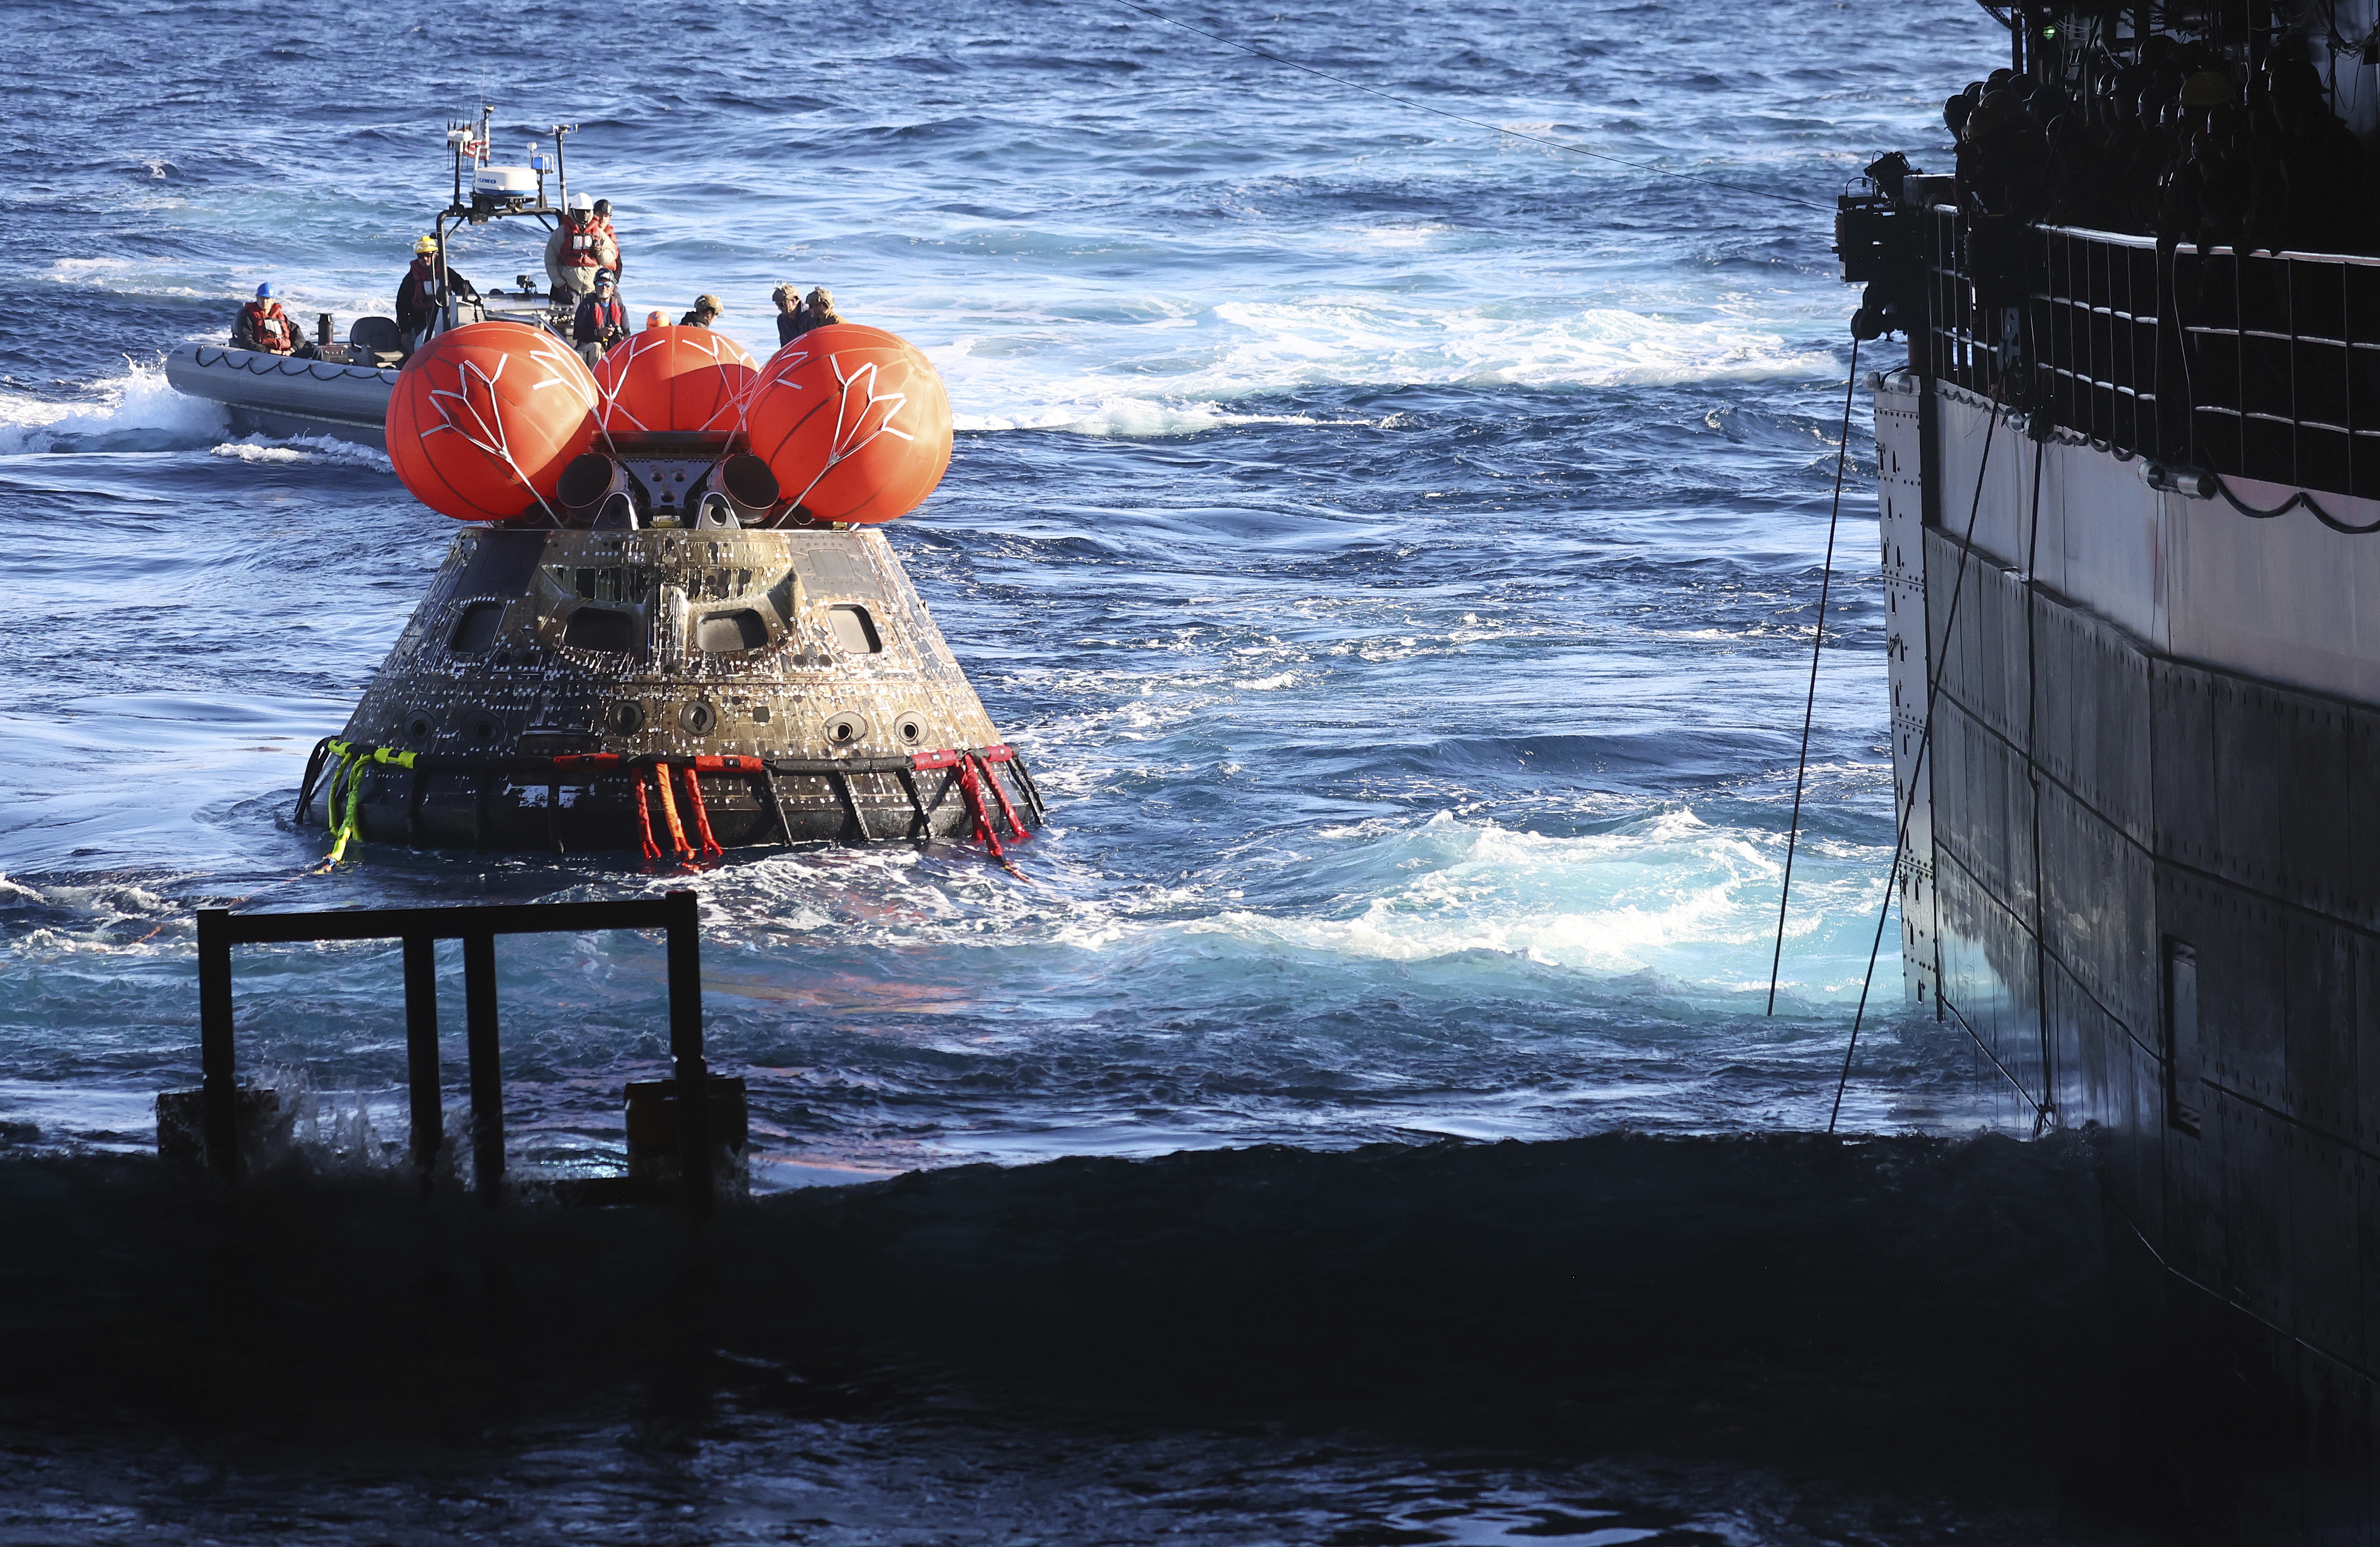 La cápsula Orión de la NASA es llevada a la cubierta del USS Portland después del regreso exitoso de la misión lunar no tripulada Artemis 1, el domingo 11 de diciembre de 2022, en el Océano Pacífico, frente a las costas de Baja California, México. (Mario Tama/Pool Photo via AP)